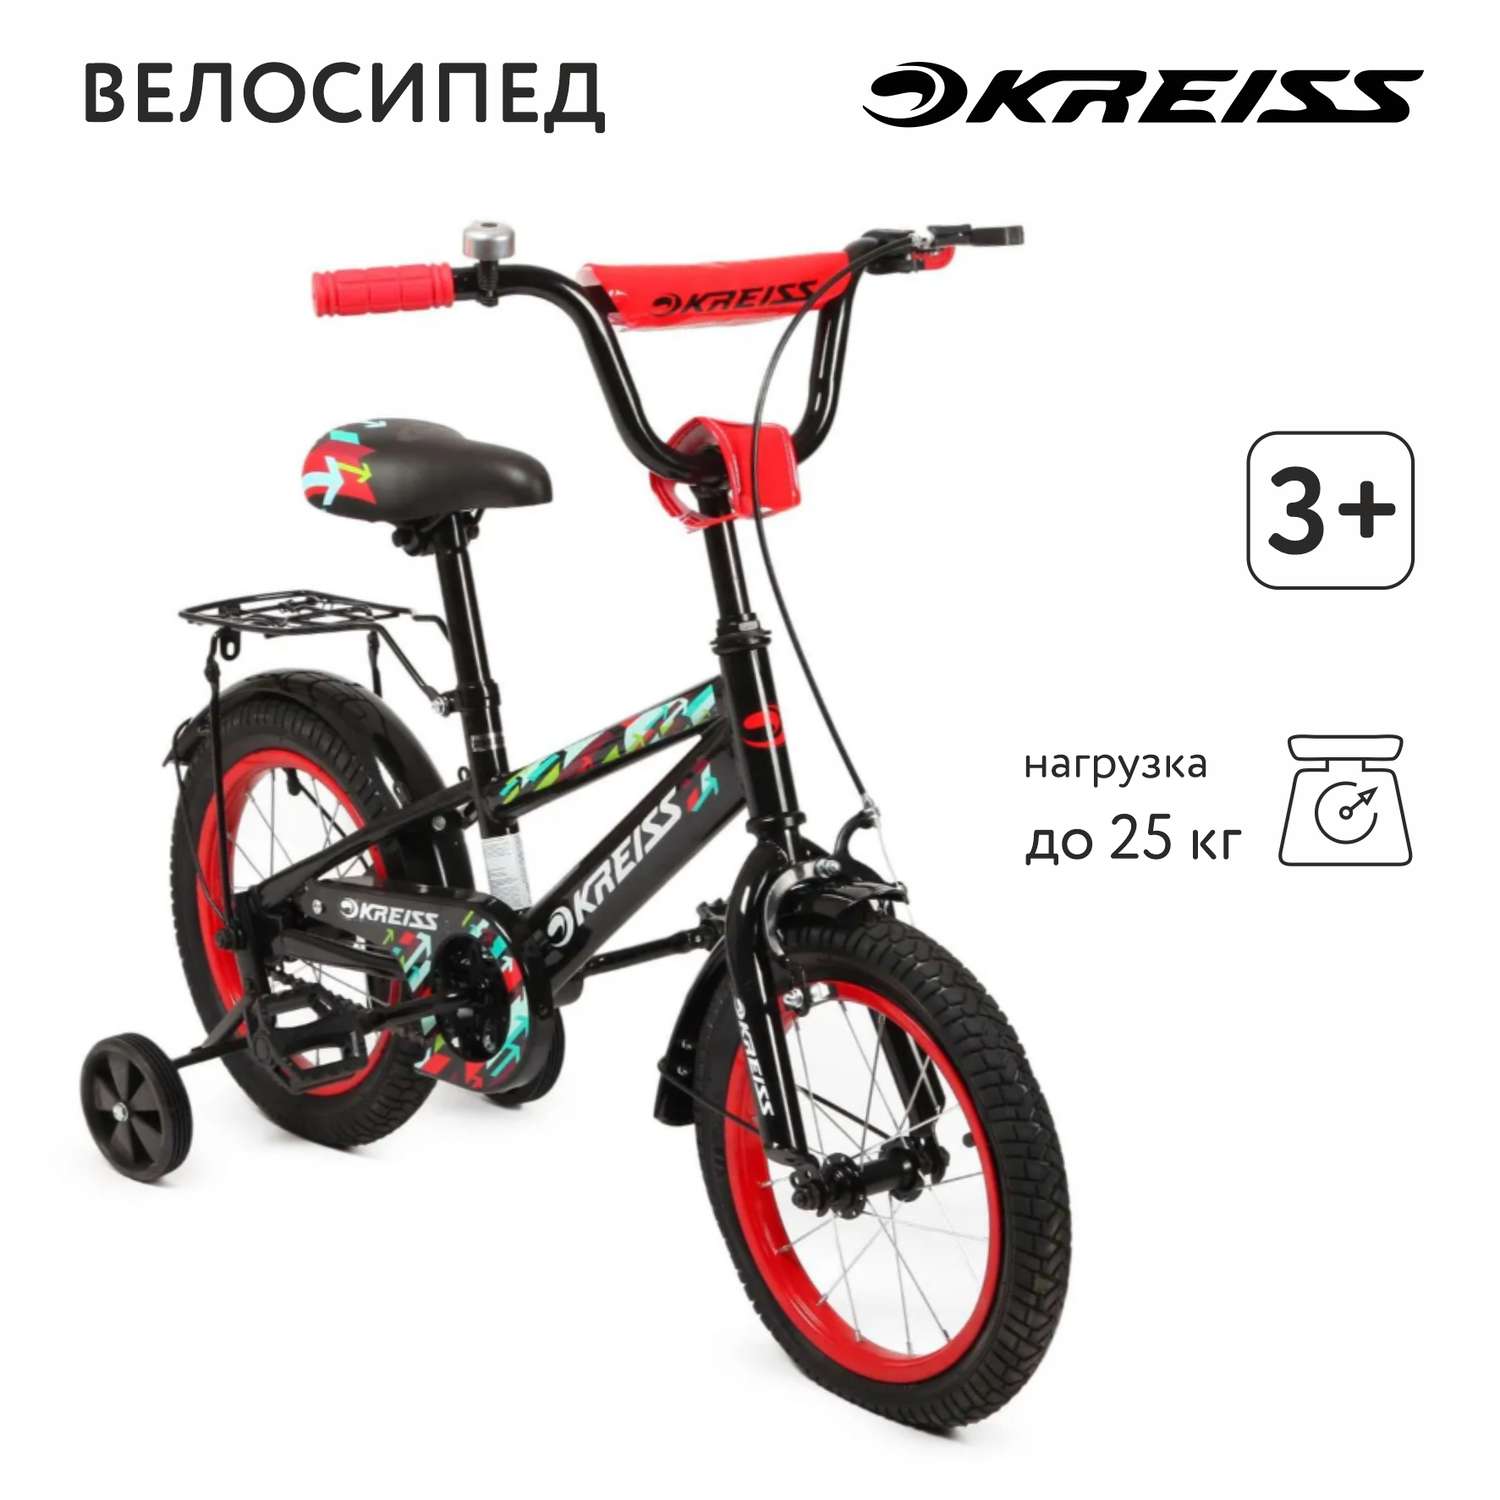 Велосипед двухколесный Kreiss 14 дюймов - фото 1